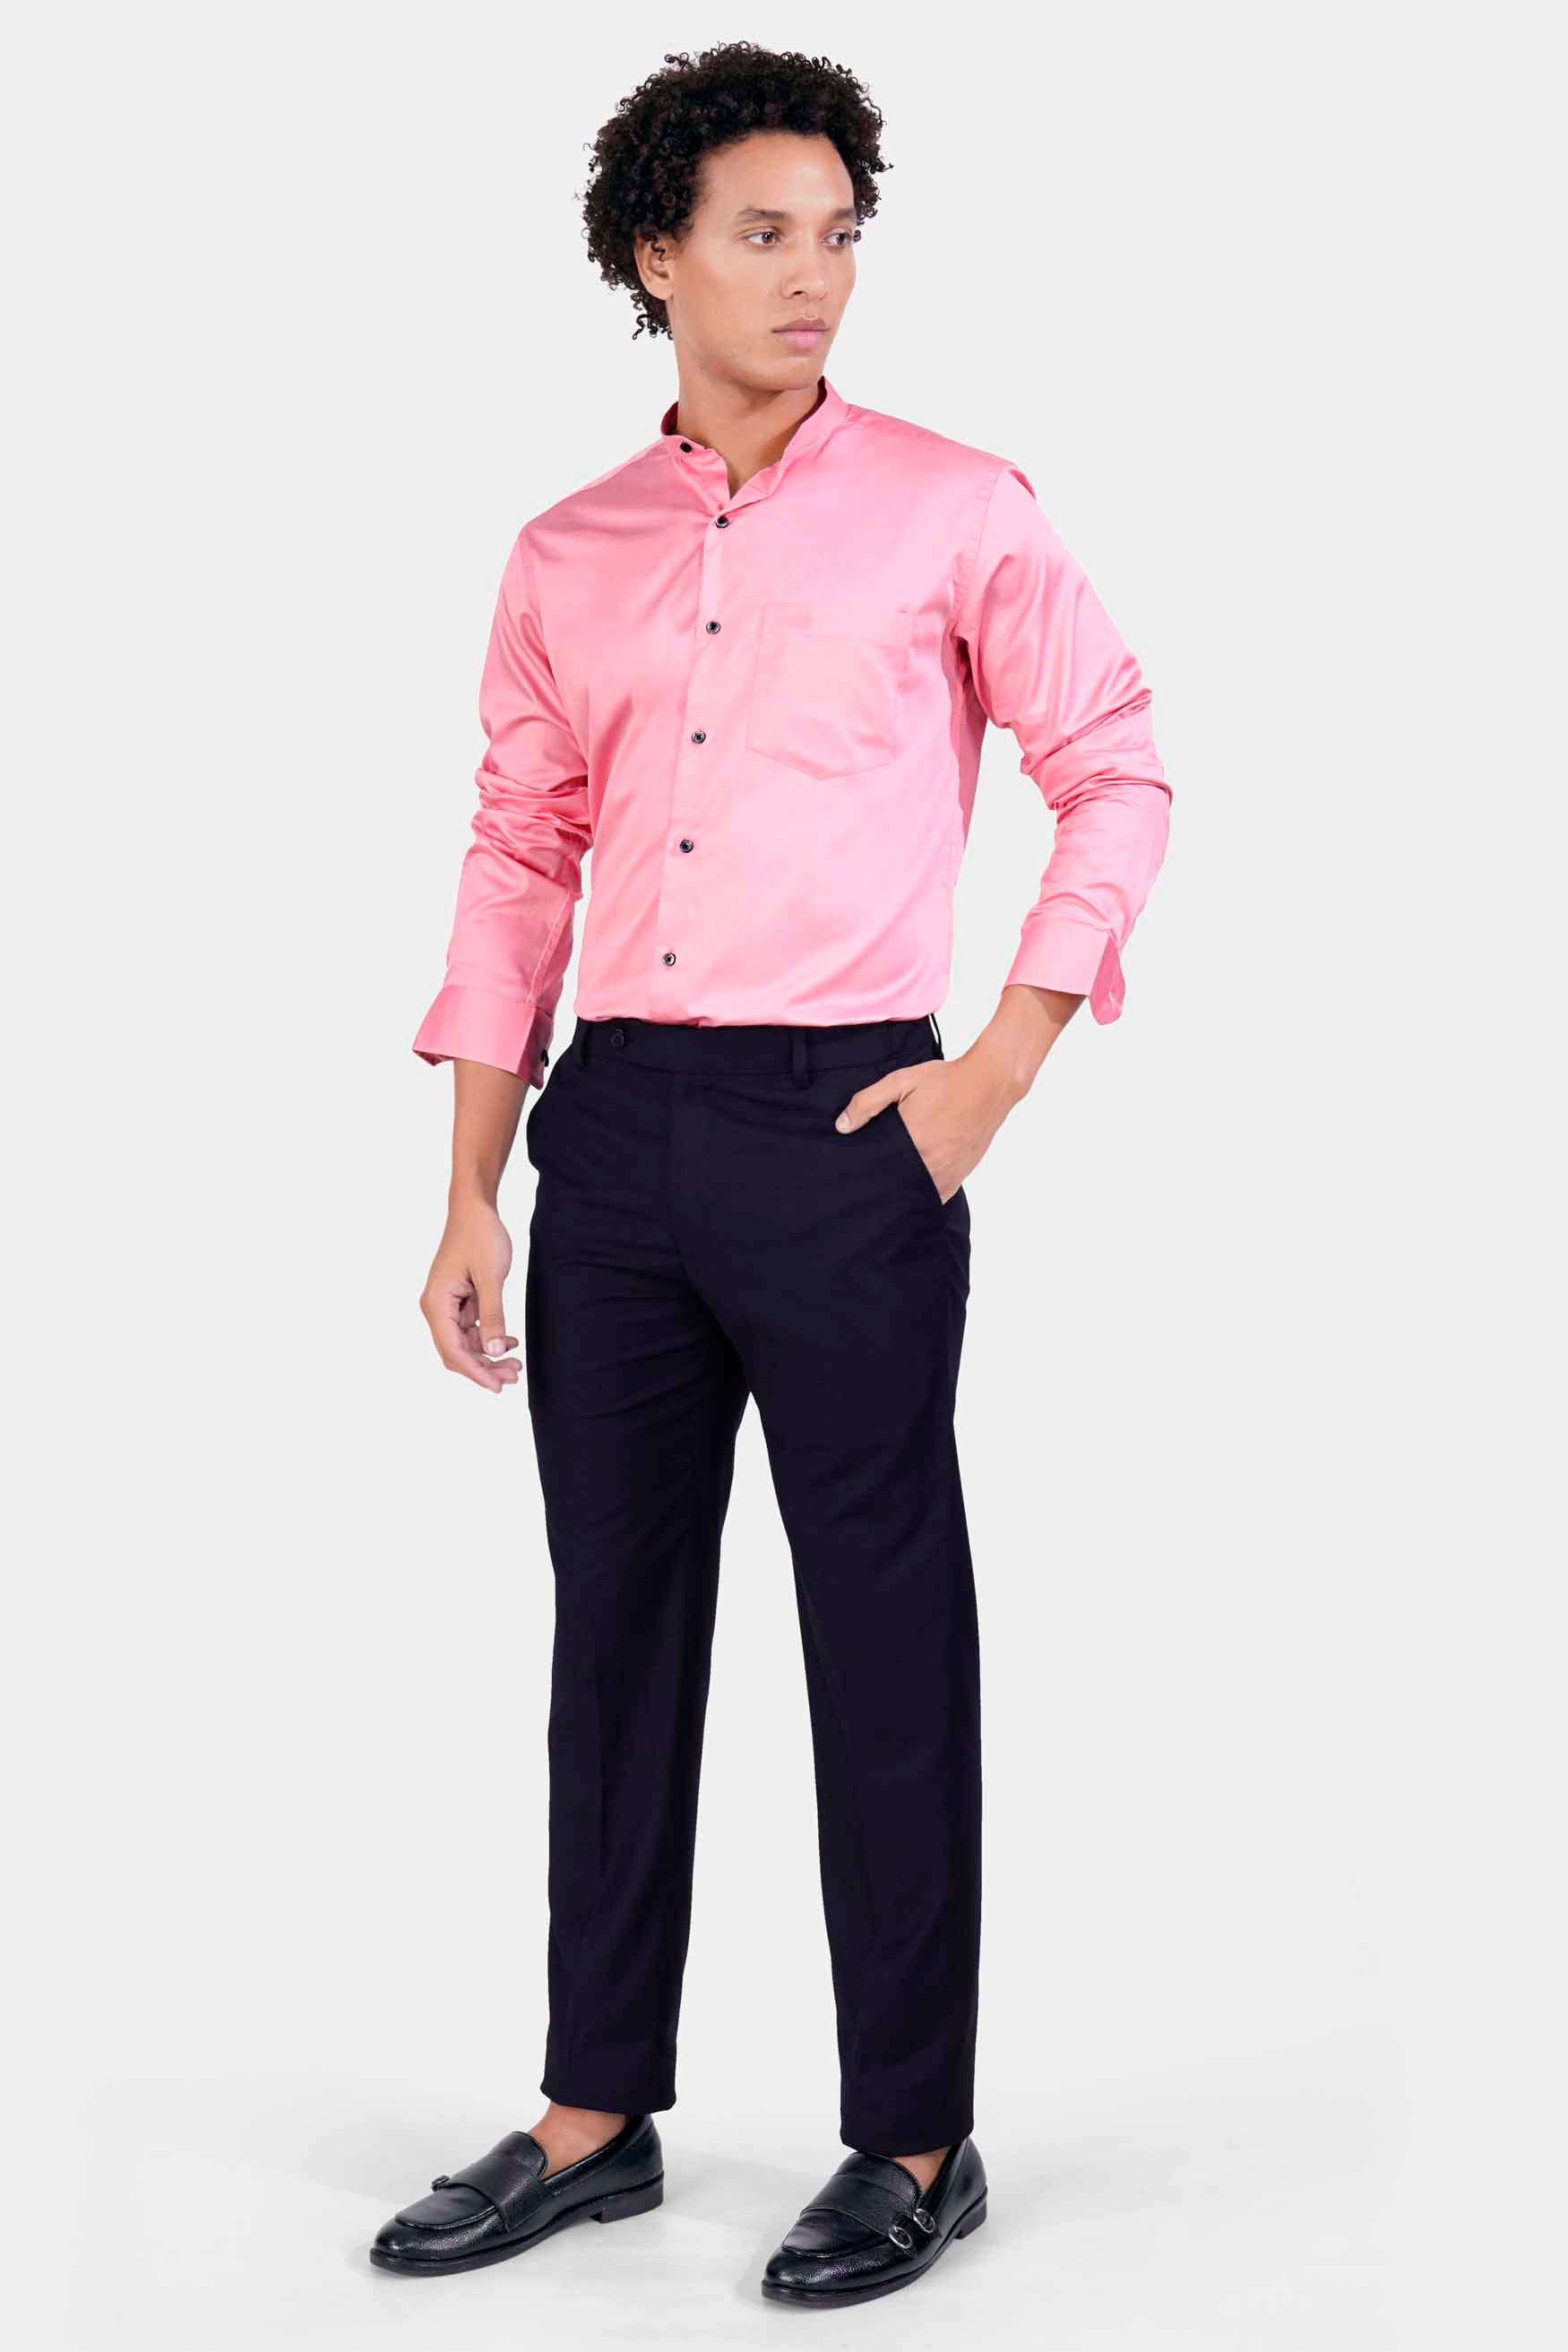 Taffy Pink Subtle Sheen Super Soft Premium Cotton Mandarin Shirt